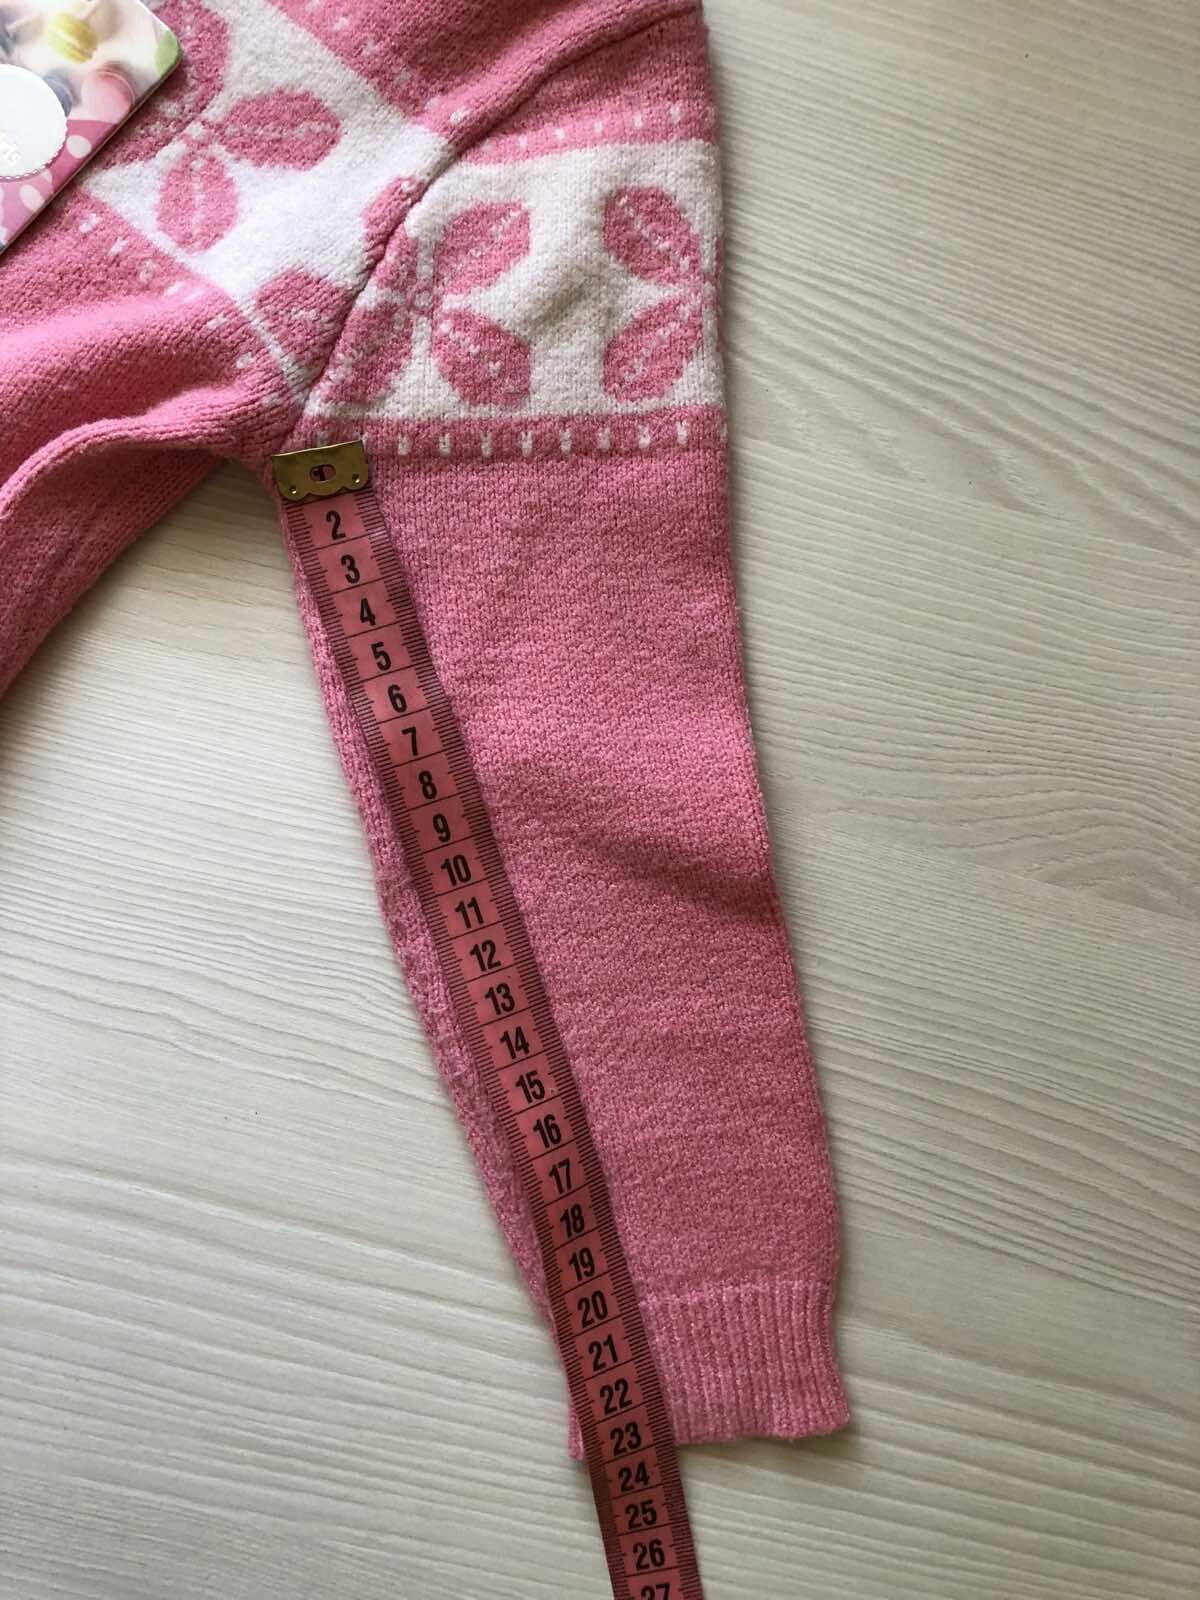 Джемпер,  свитер, туника Италия для девочки на 2-3 года, рост 92-98 см